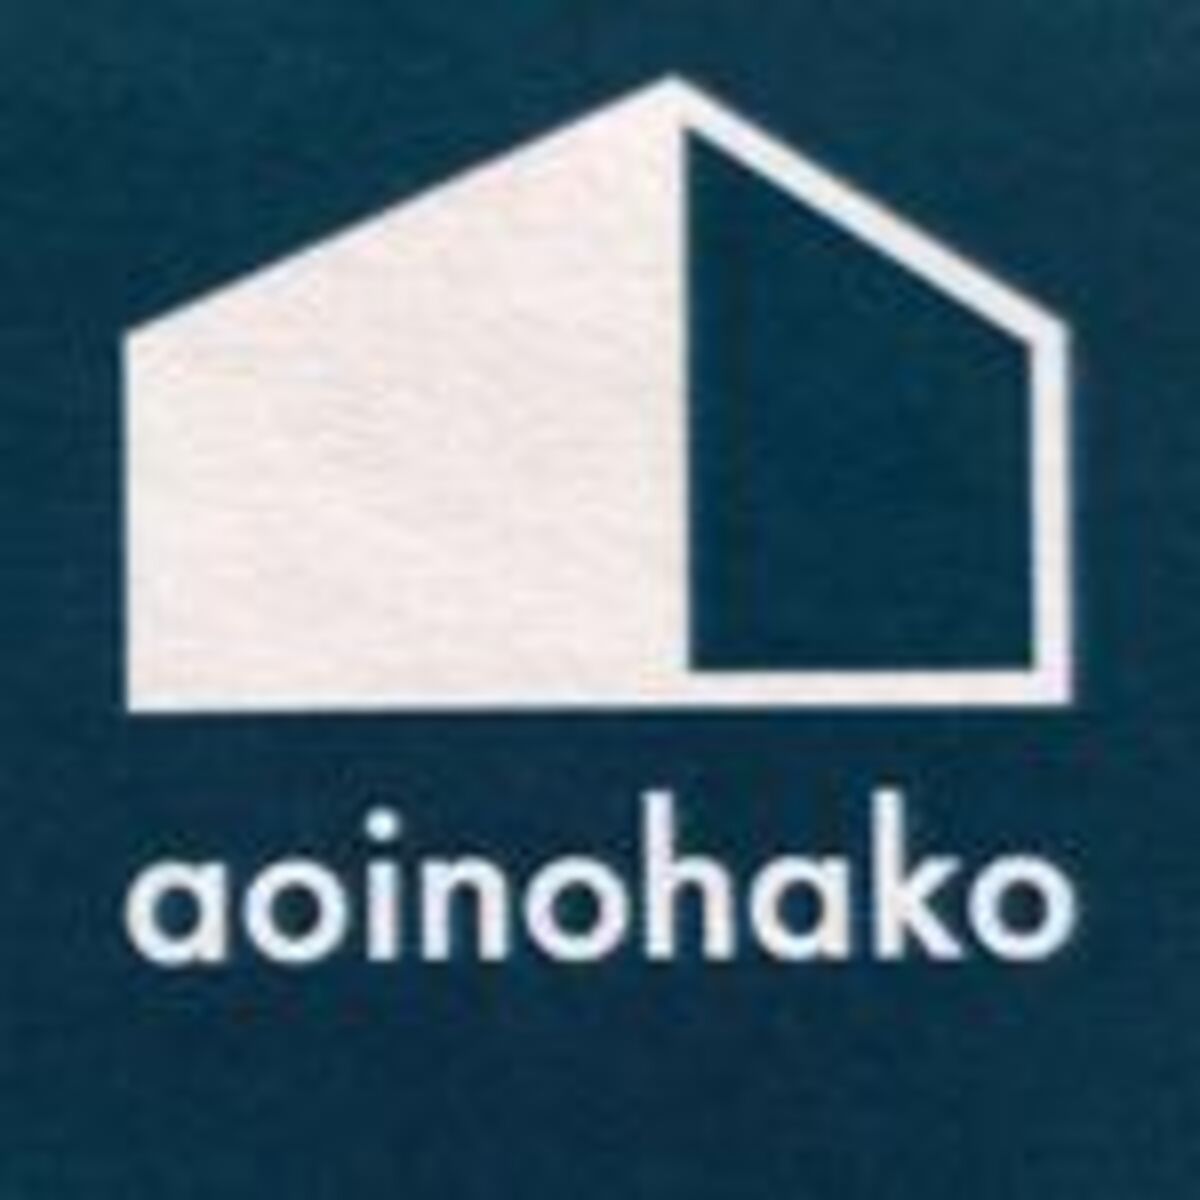 アオイノハコのロゴ